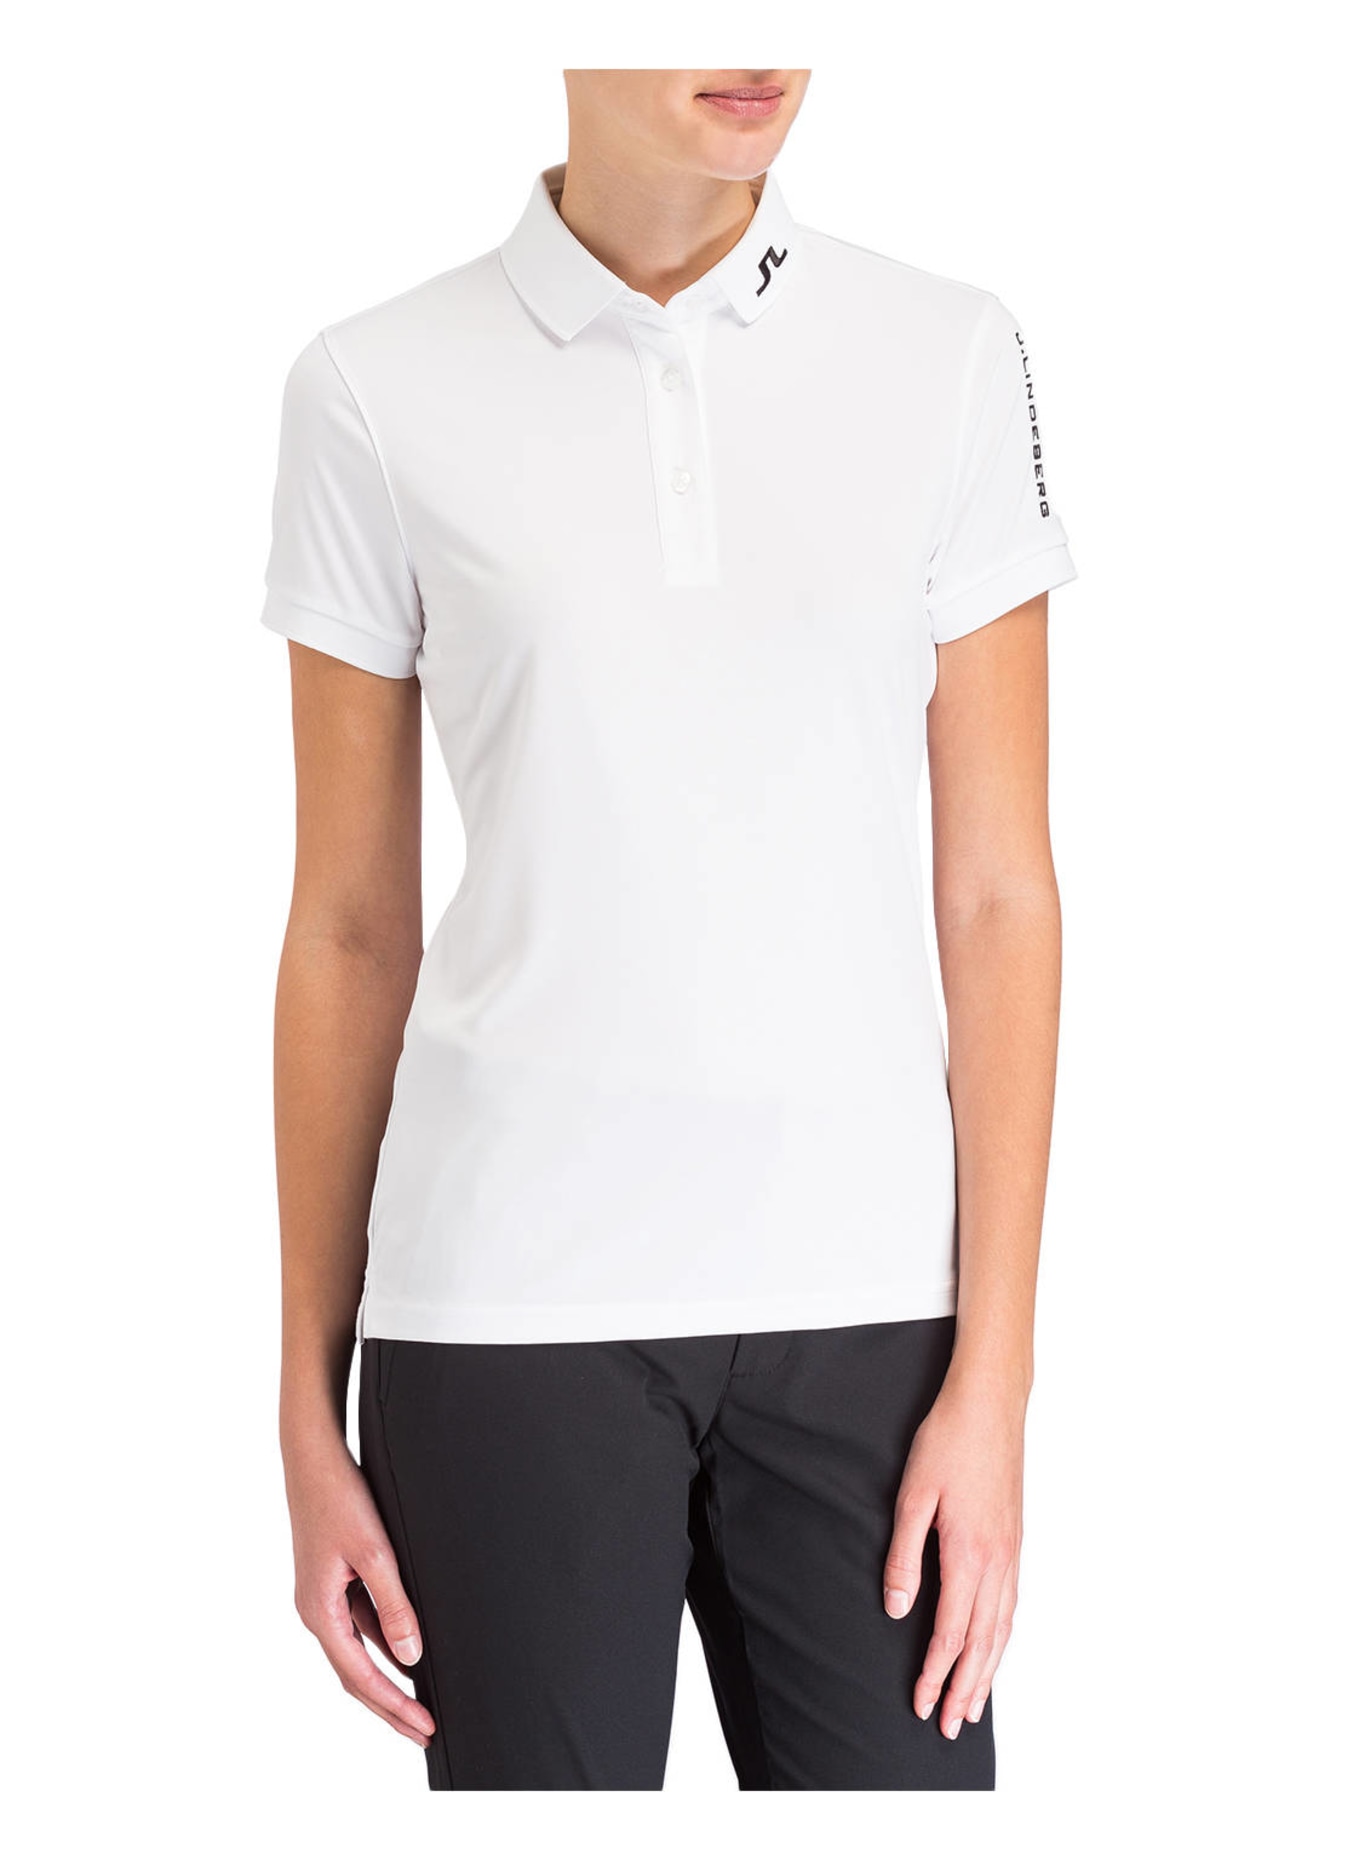 J.LINDEBERG Performance polo shirt , Color: WHITE (Image 2)